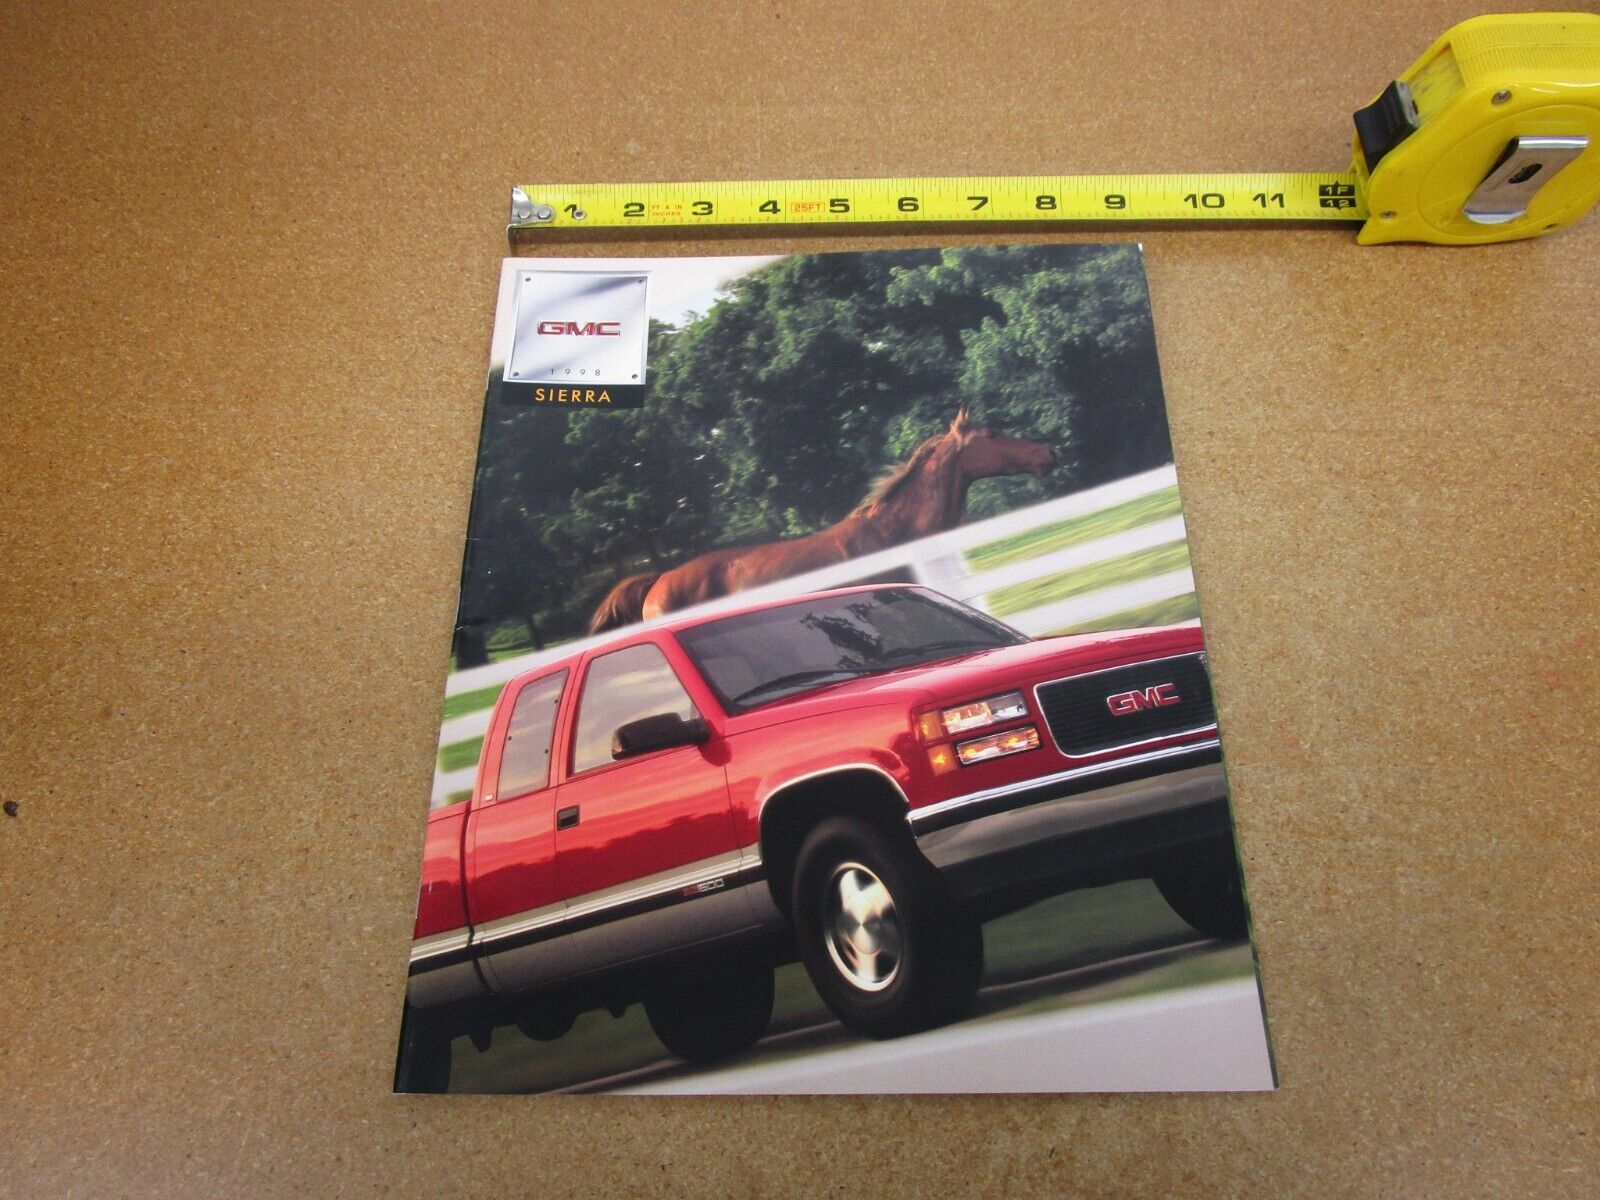 1998 GMC Sierra pickup truck 1500 2500 3500 sales brochure 34 pg ORIGINAL